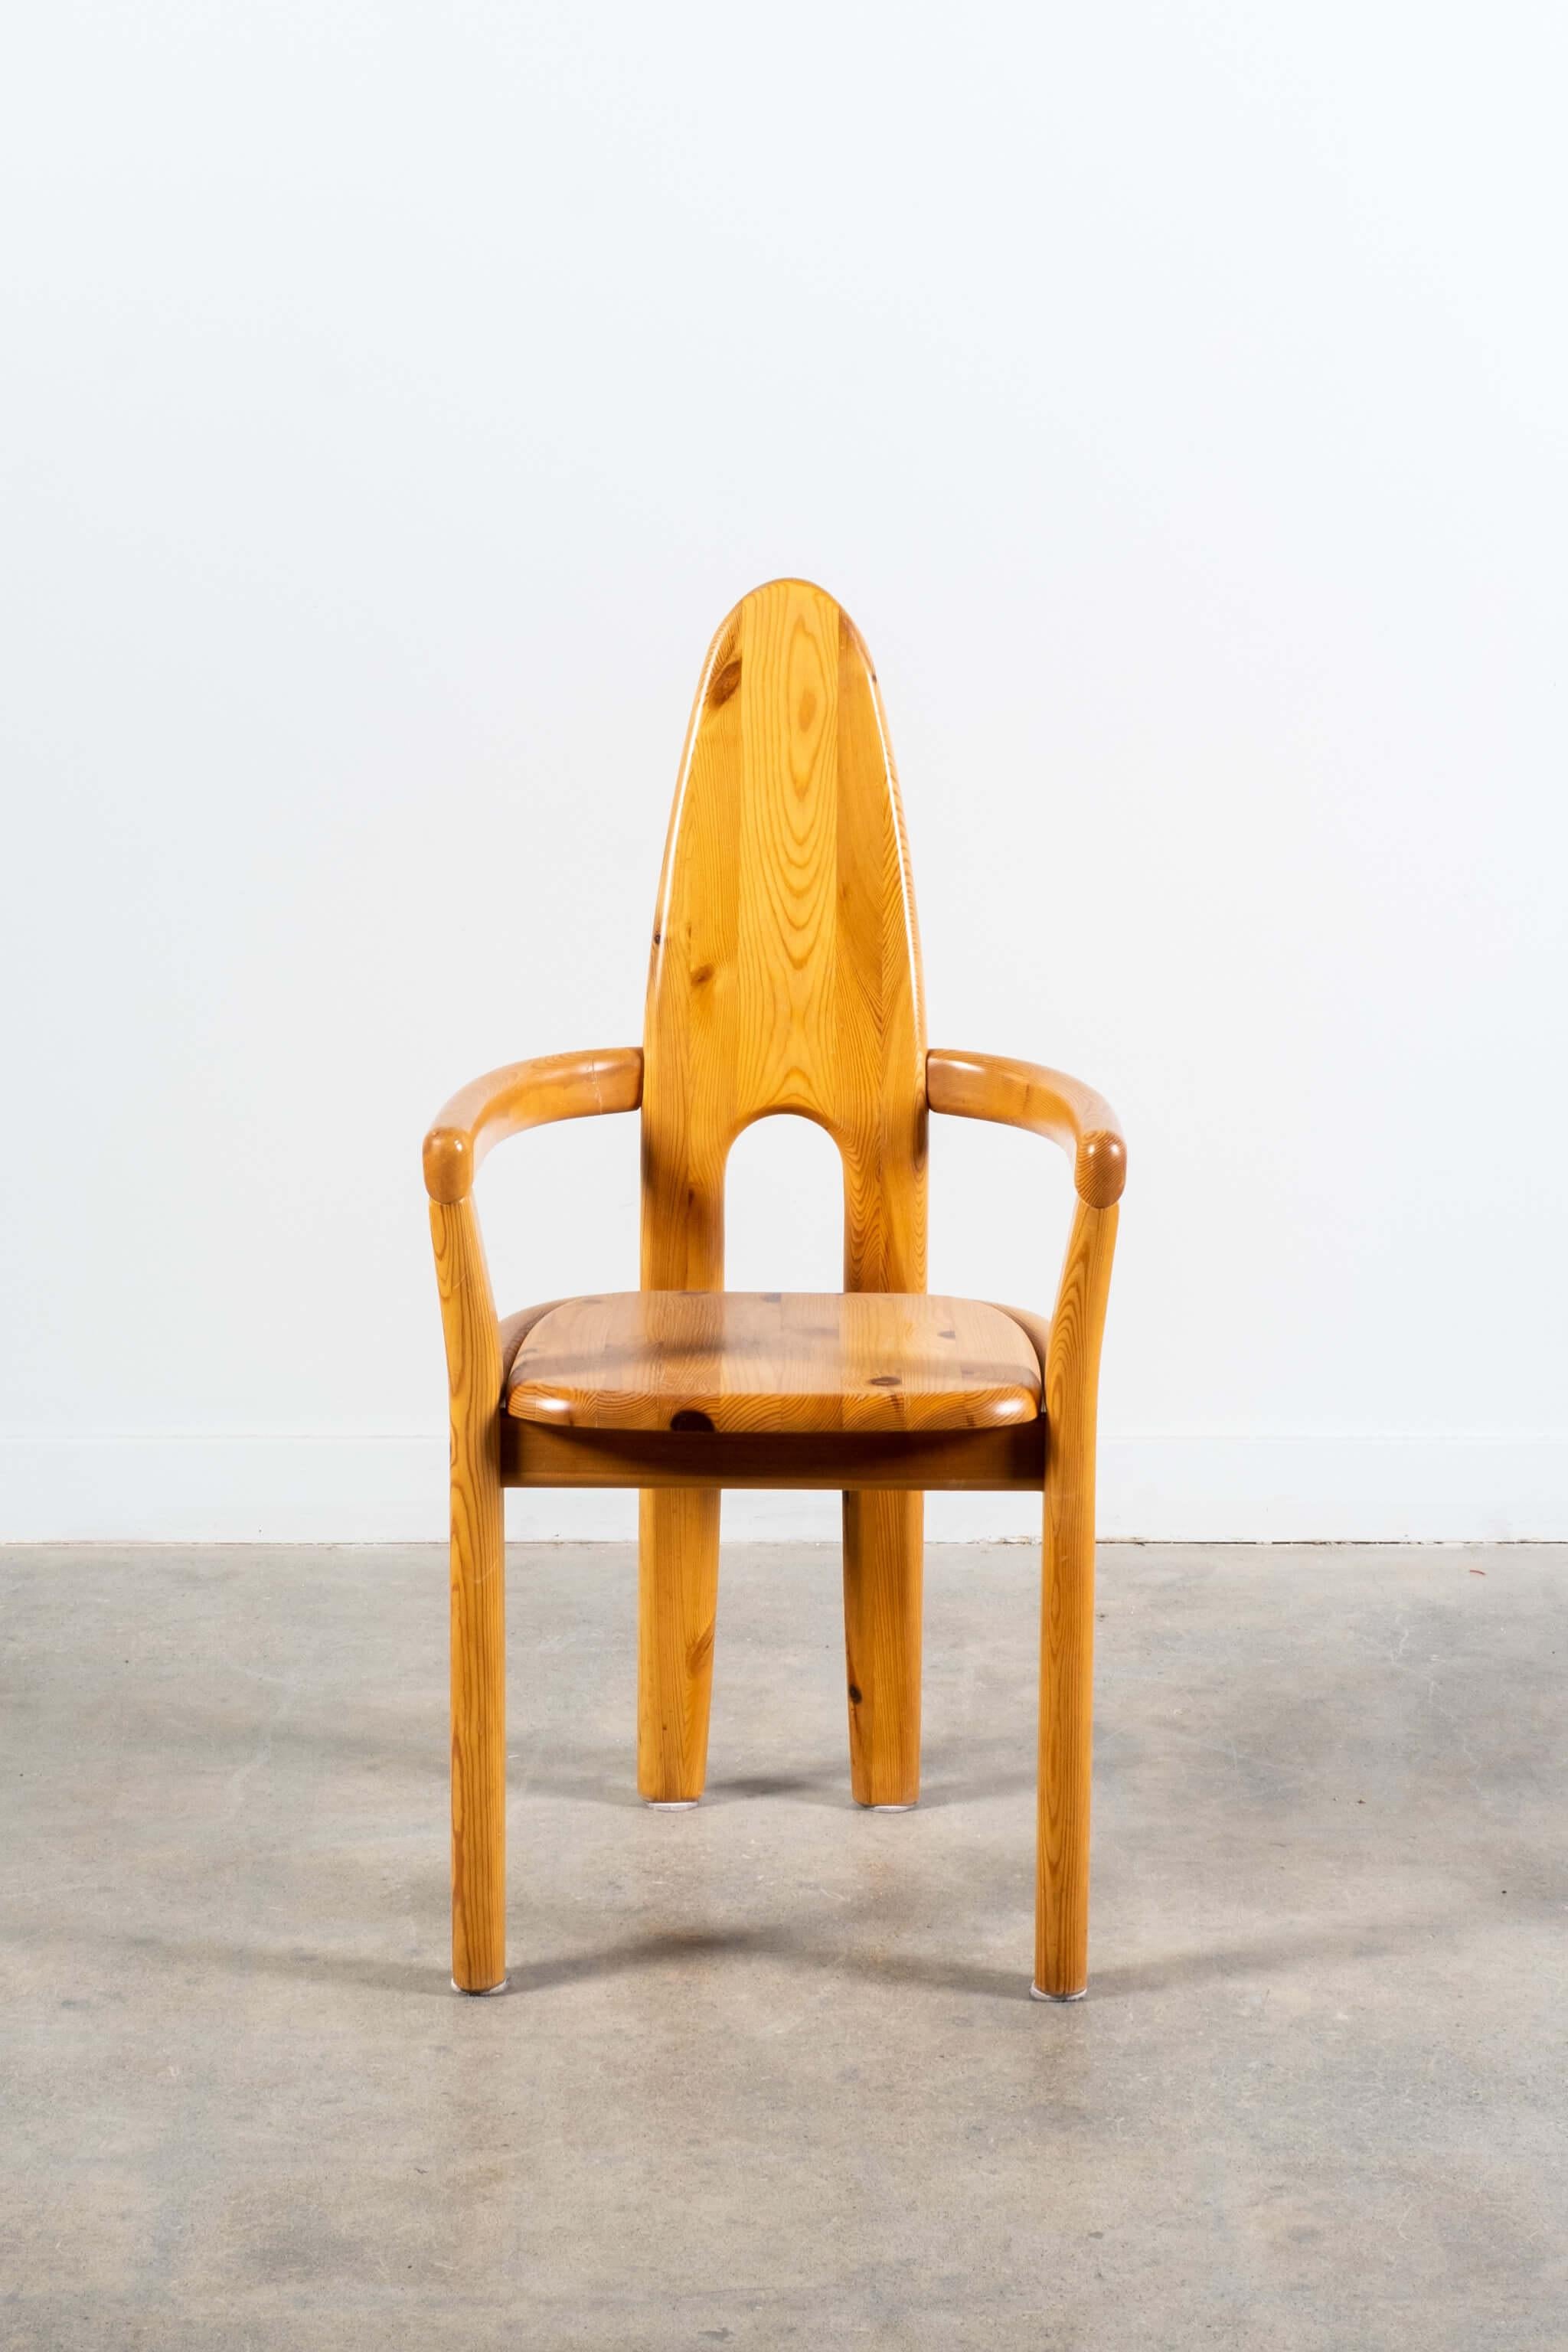 Dieses seltene Stuhlset des in Deutschland geborenen Designers Rainer Daumiller zeichnet sich durch eine skulpturale hohe Rückenlehne aus massivem Kiefernholz aus. Die solide Konstruktion, die schlichte Form und der skulpturale Ausdruck sind eine